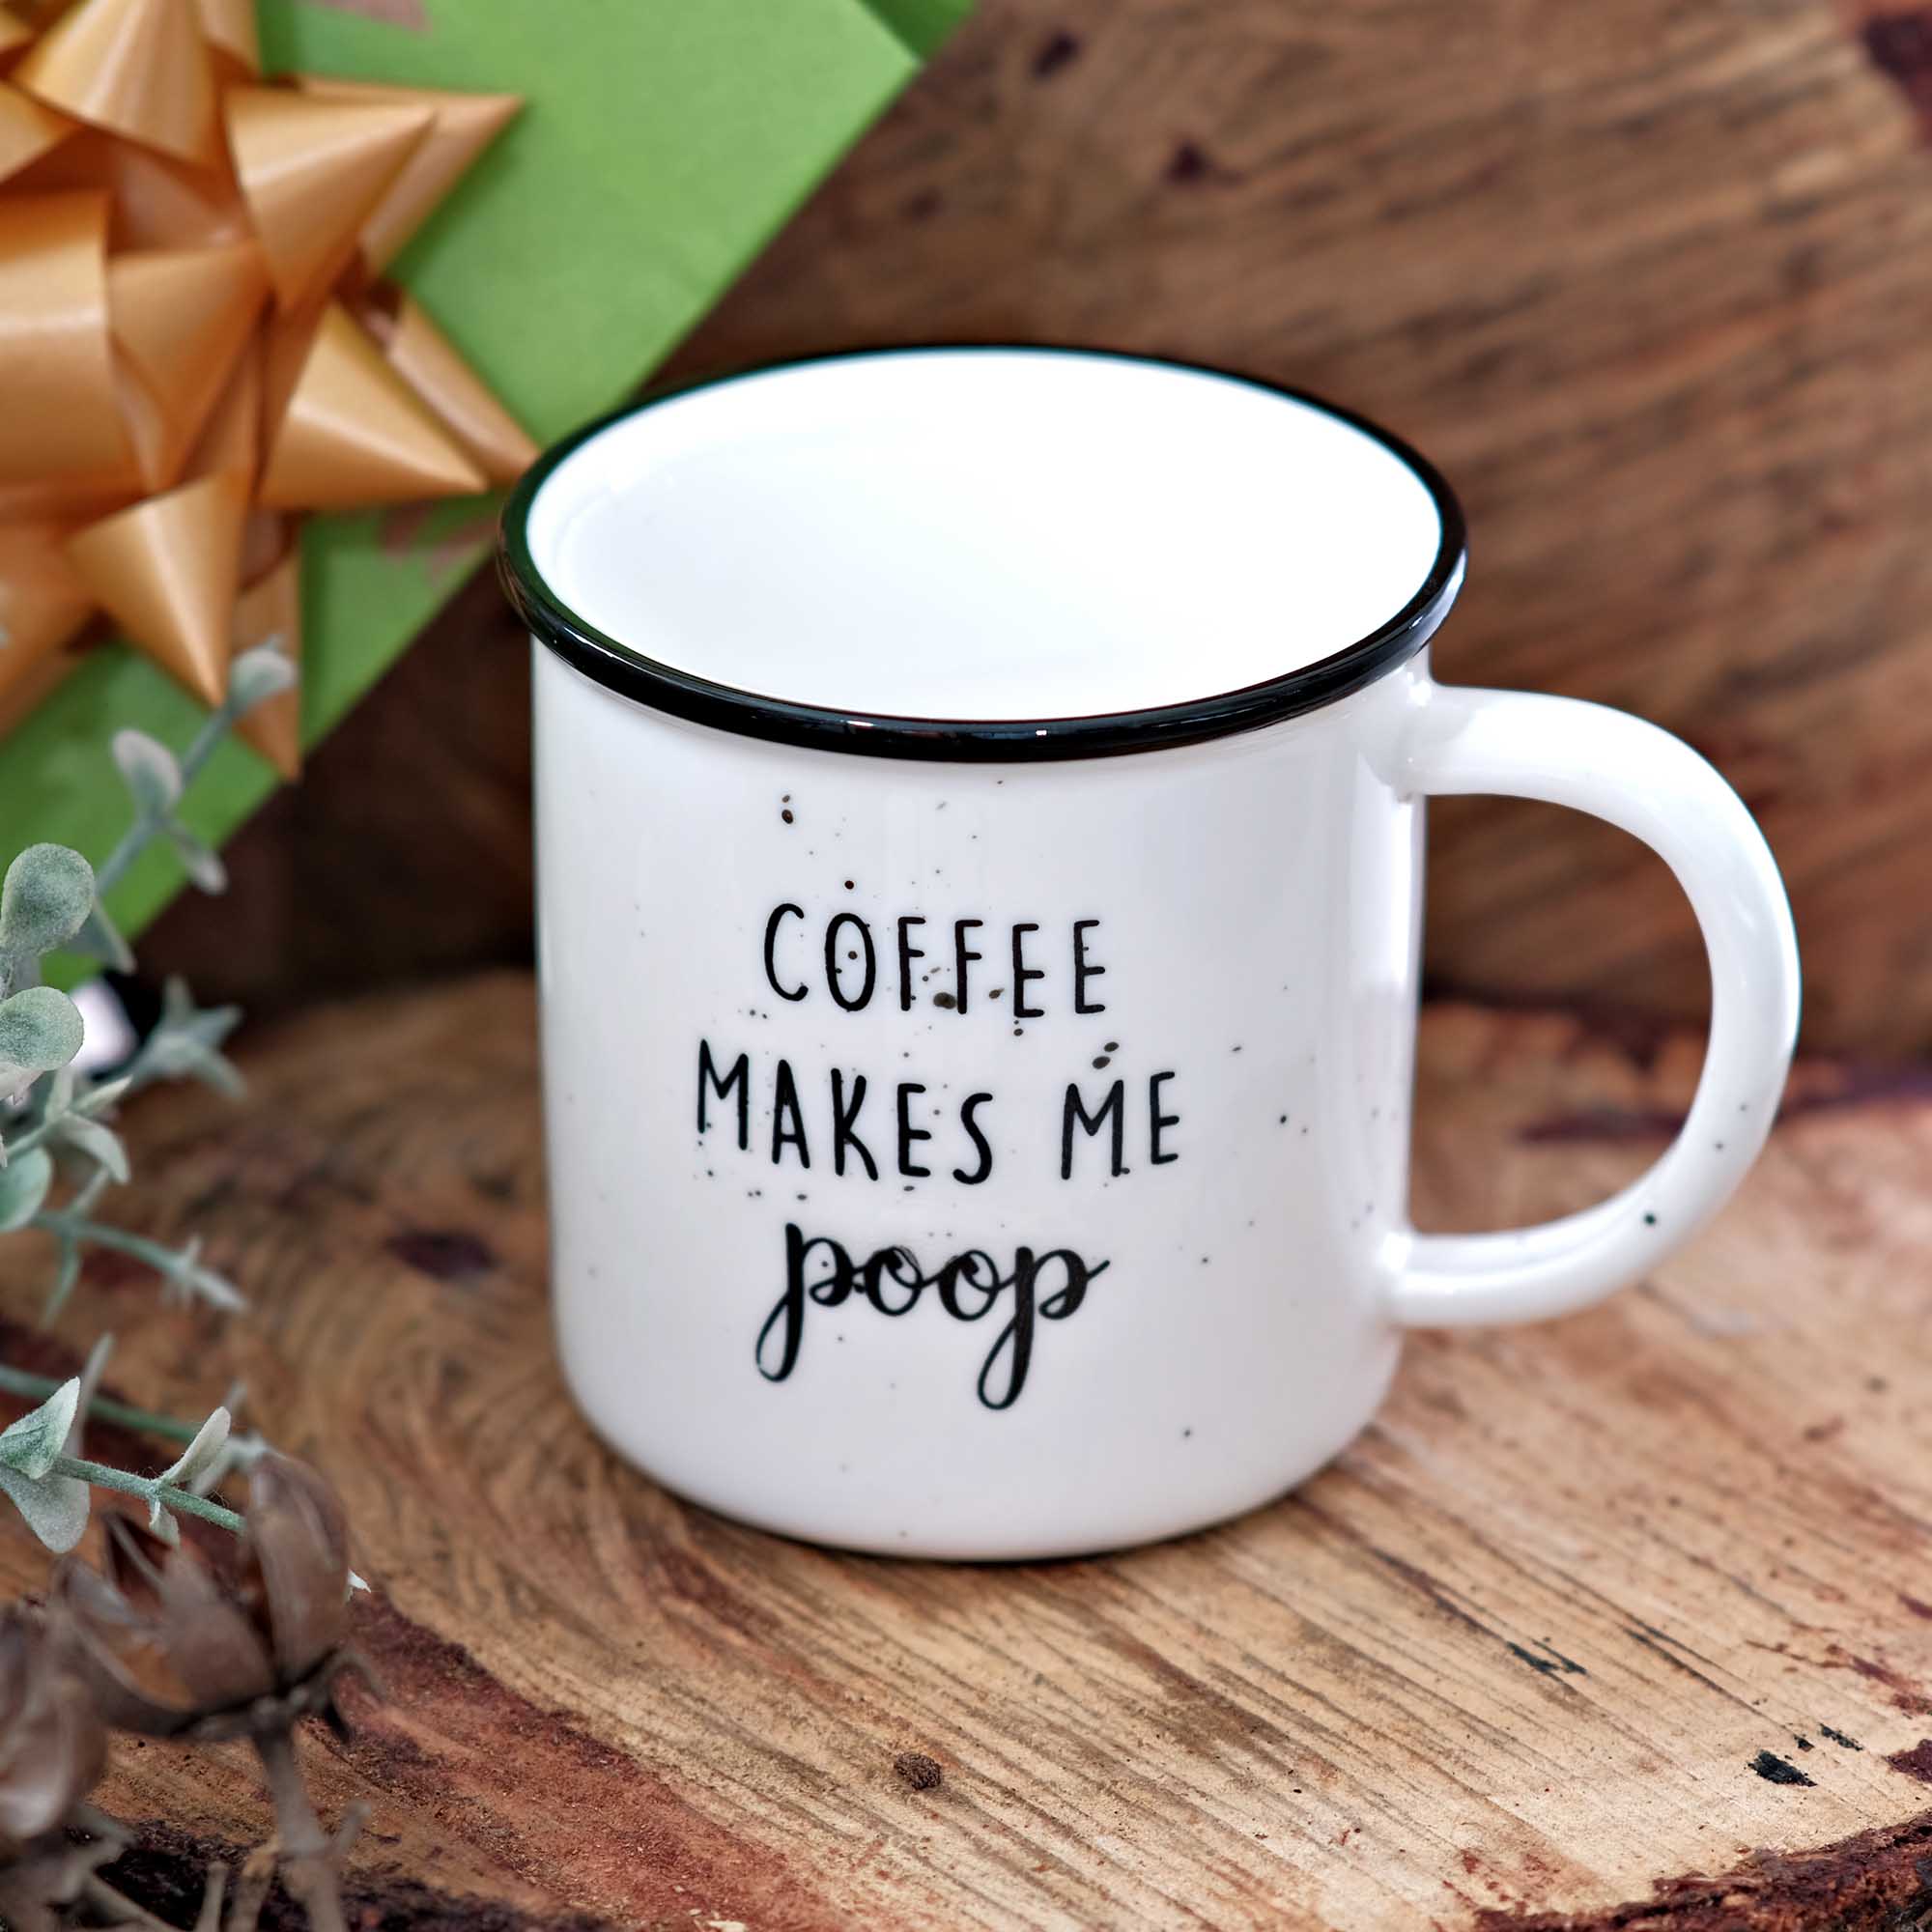 Mug for Coffee Lovers, Coffee Gifts, Cute Coffee Mugs, Funny Mug